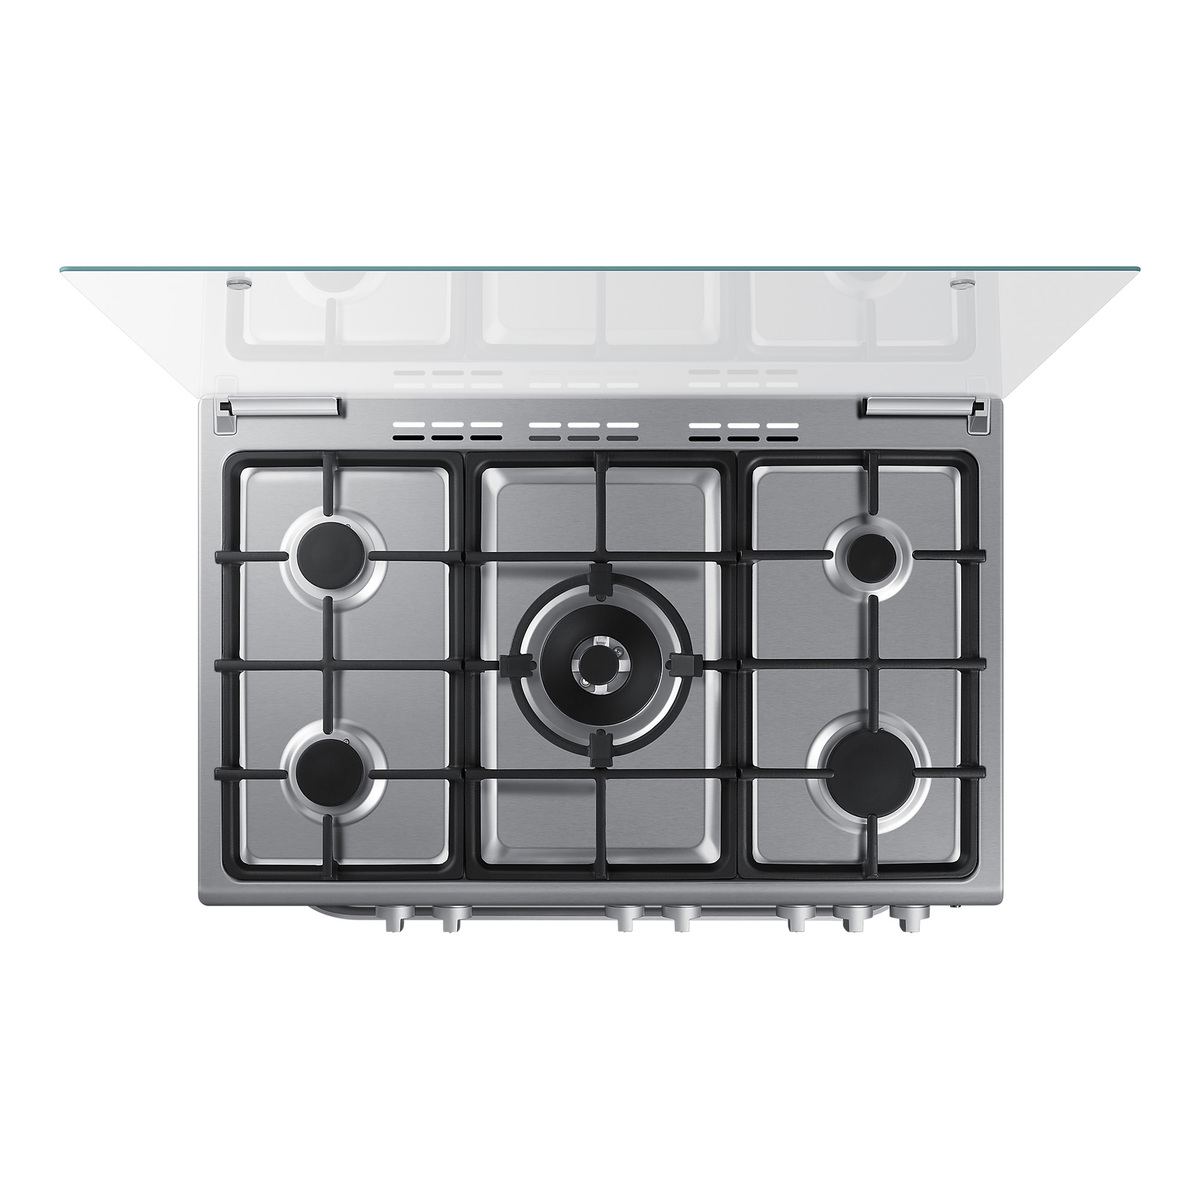 سامسونج ،NX5500BM ،مجموعة غاز الطهي مع شعلة كهربائية ثلاثية وفتحة دوارة تلقائية، 90 × 60 سم، فضي، NX36BG58631SSG